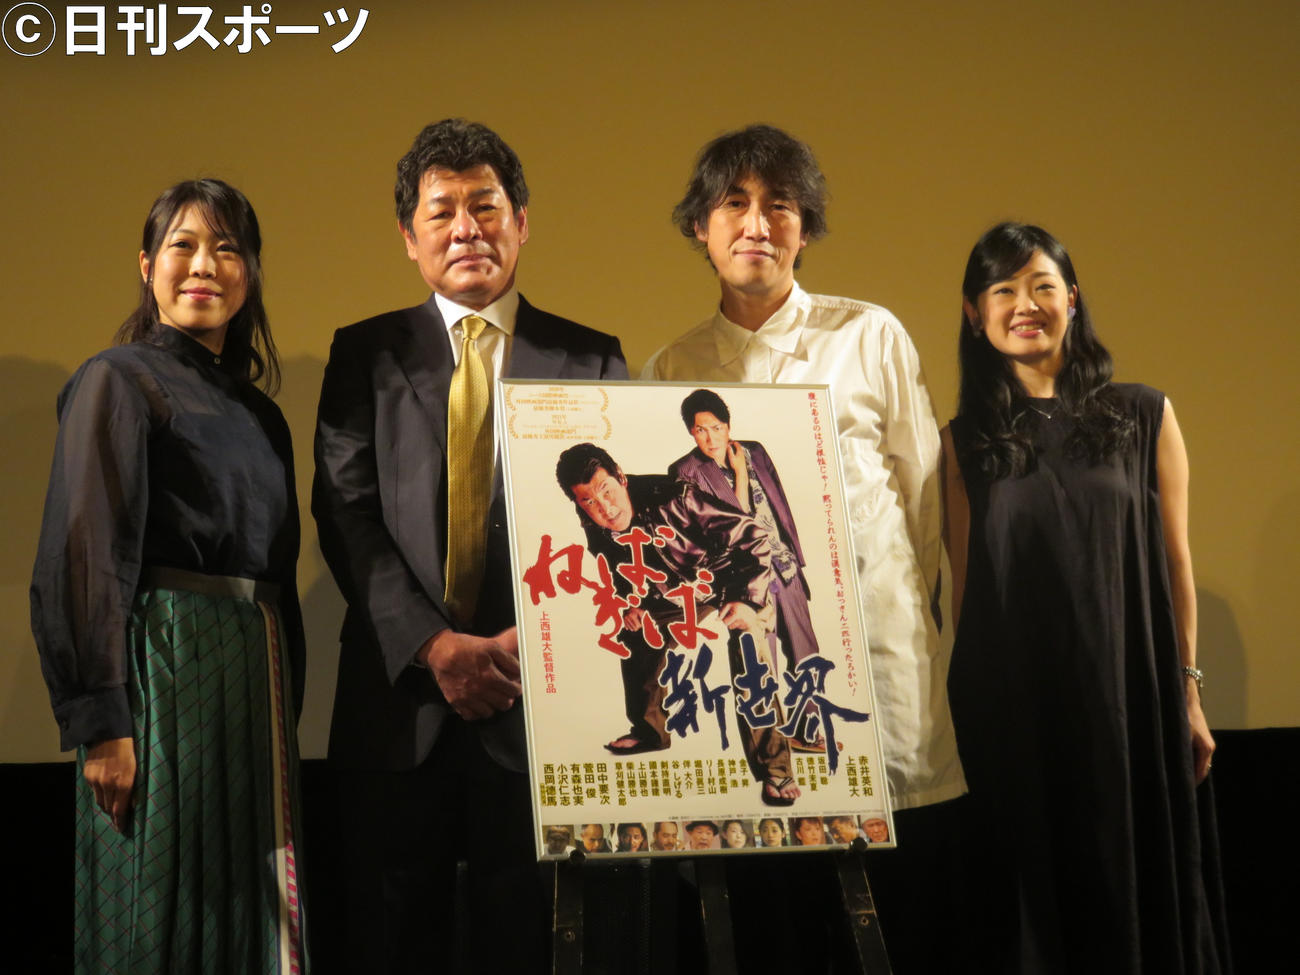 映画「ねばぎば　新世界」の完成披露舞台あいさつに登場した、左から徳竹未夏、赤井英和、上西雄大、古川藍